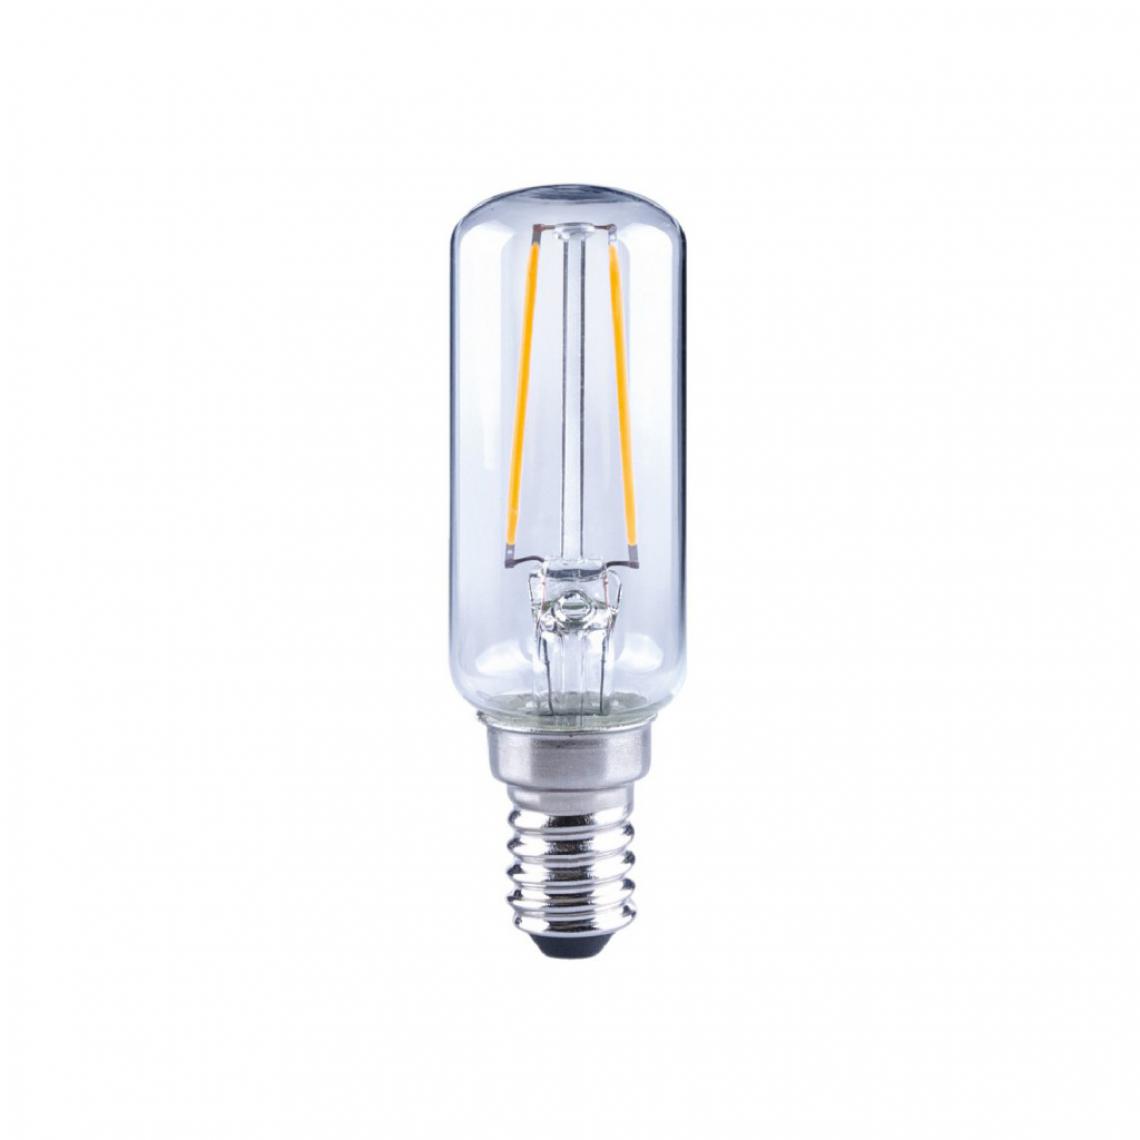 Alpexe - Lampe LED Vintage T25 2 W 250 lm 2700 K - Ampoules LED